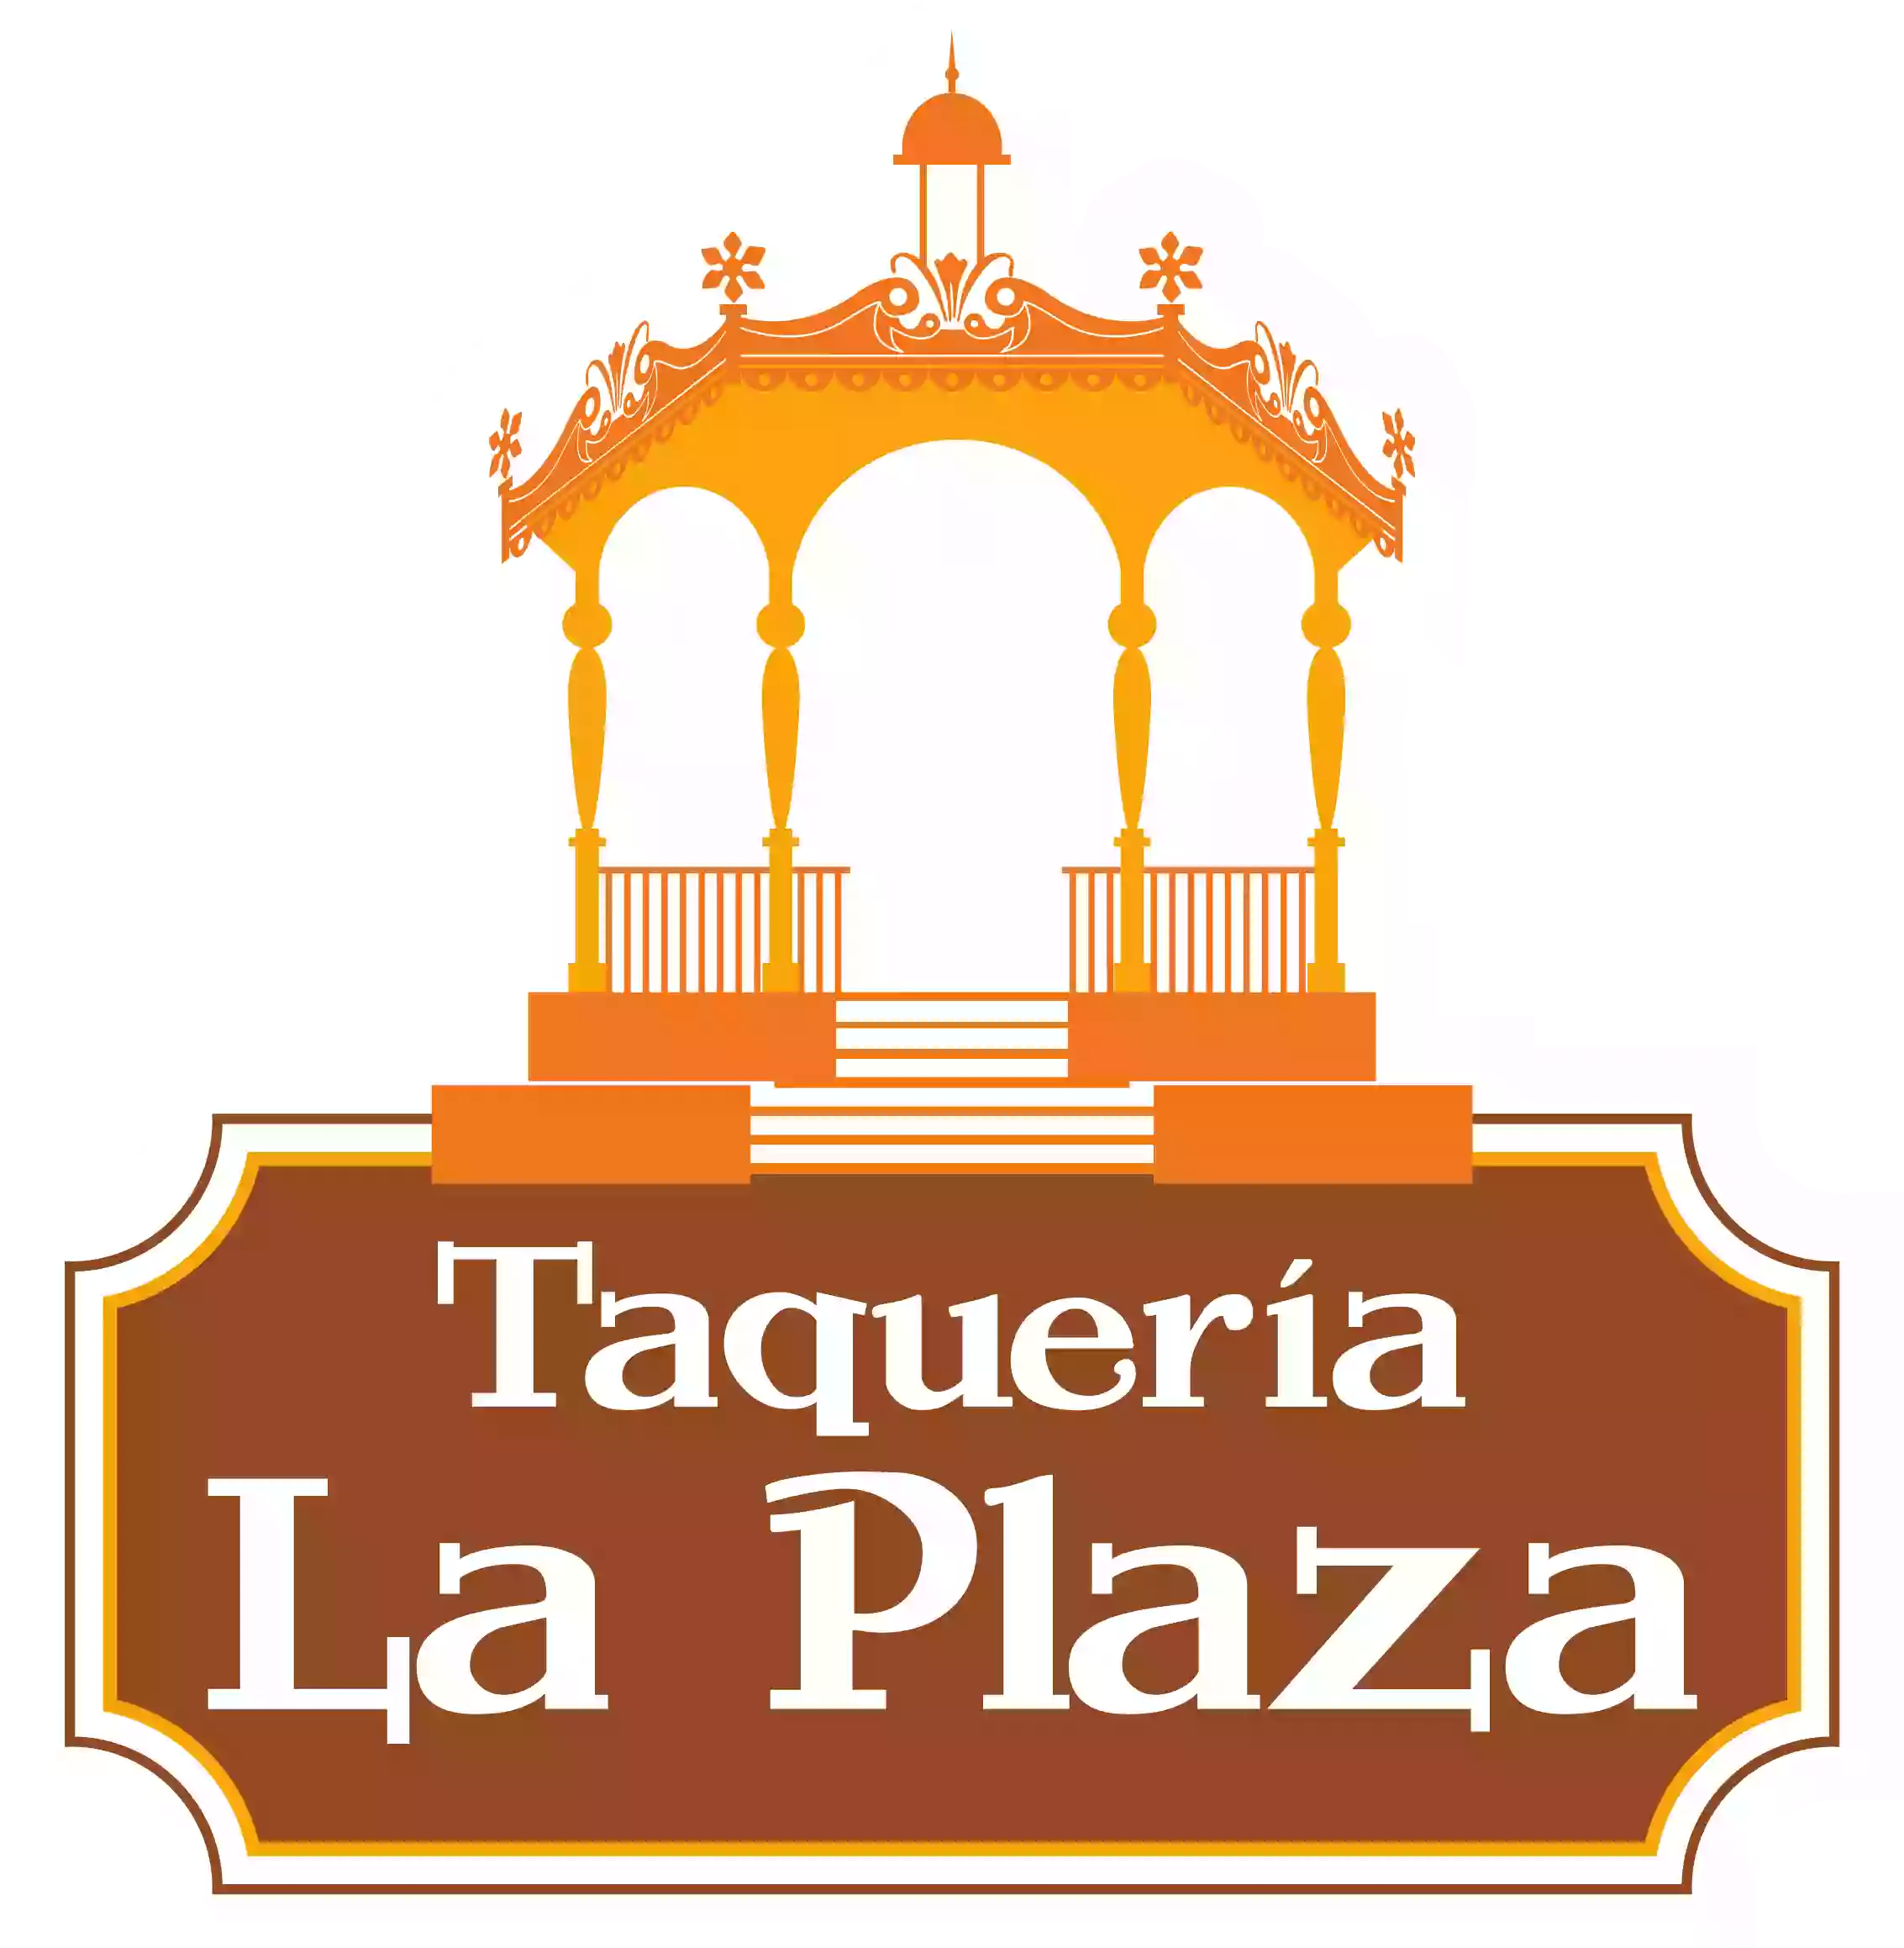 Taqueria La Plaza